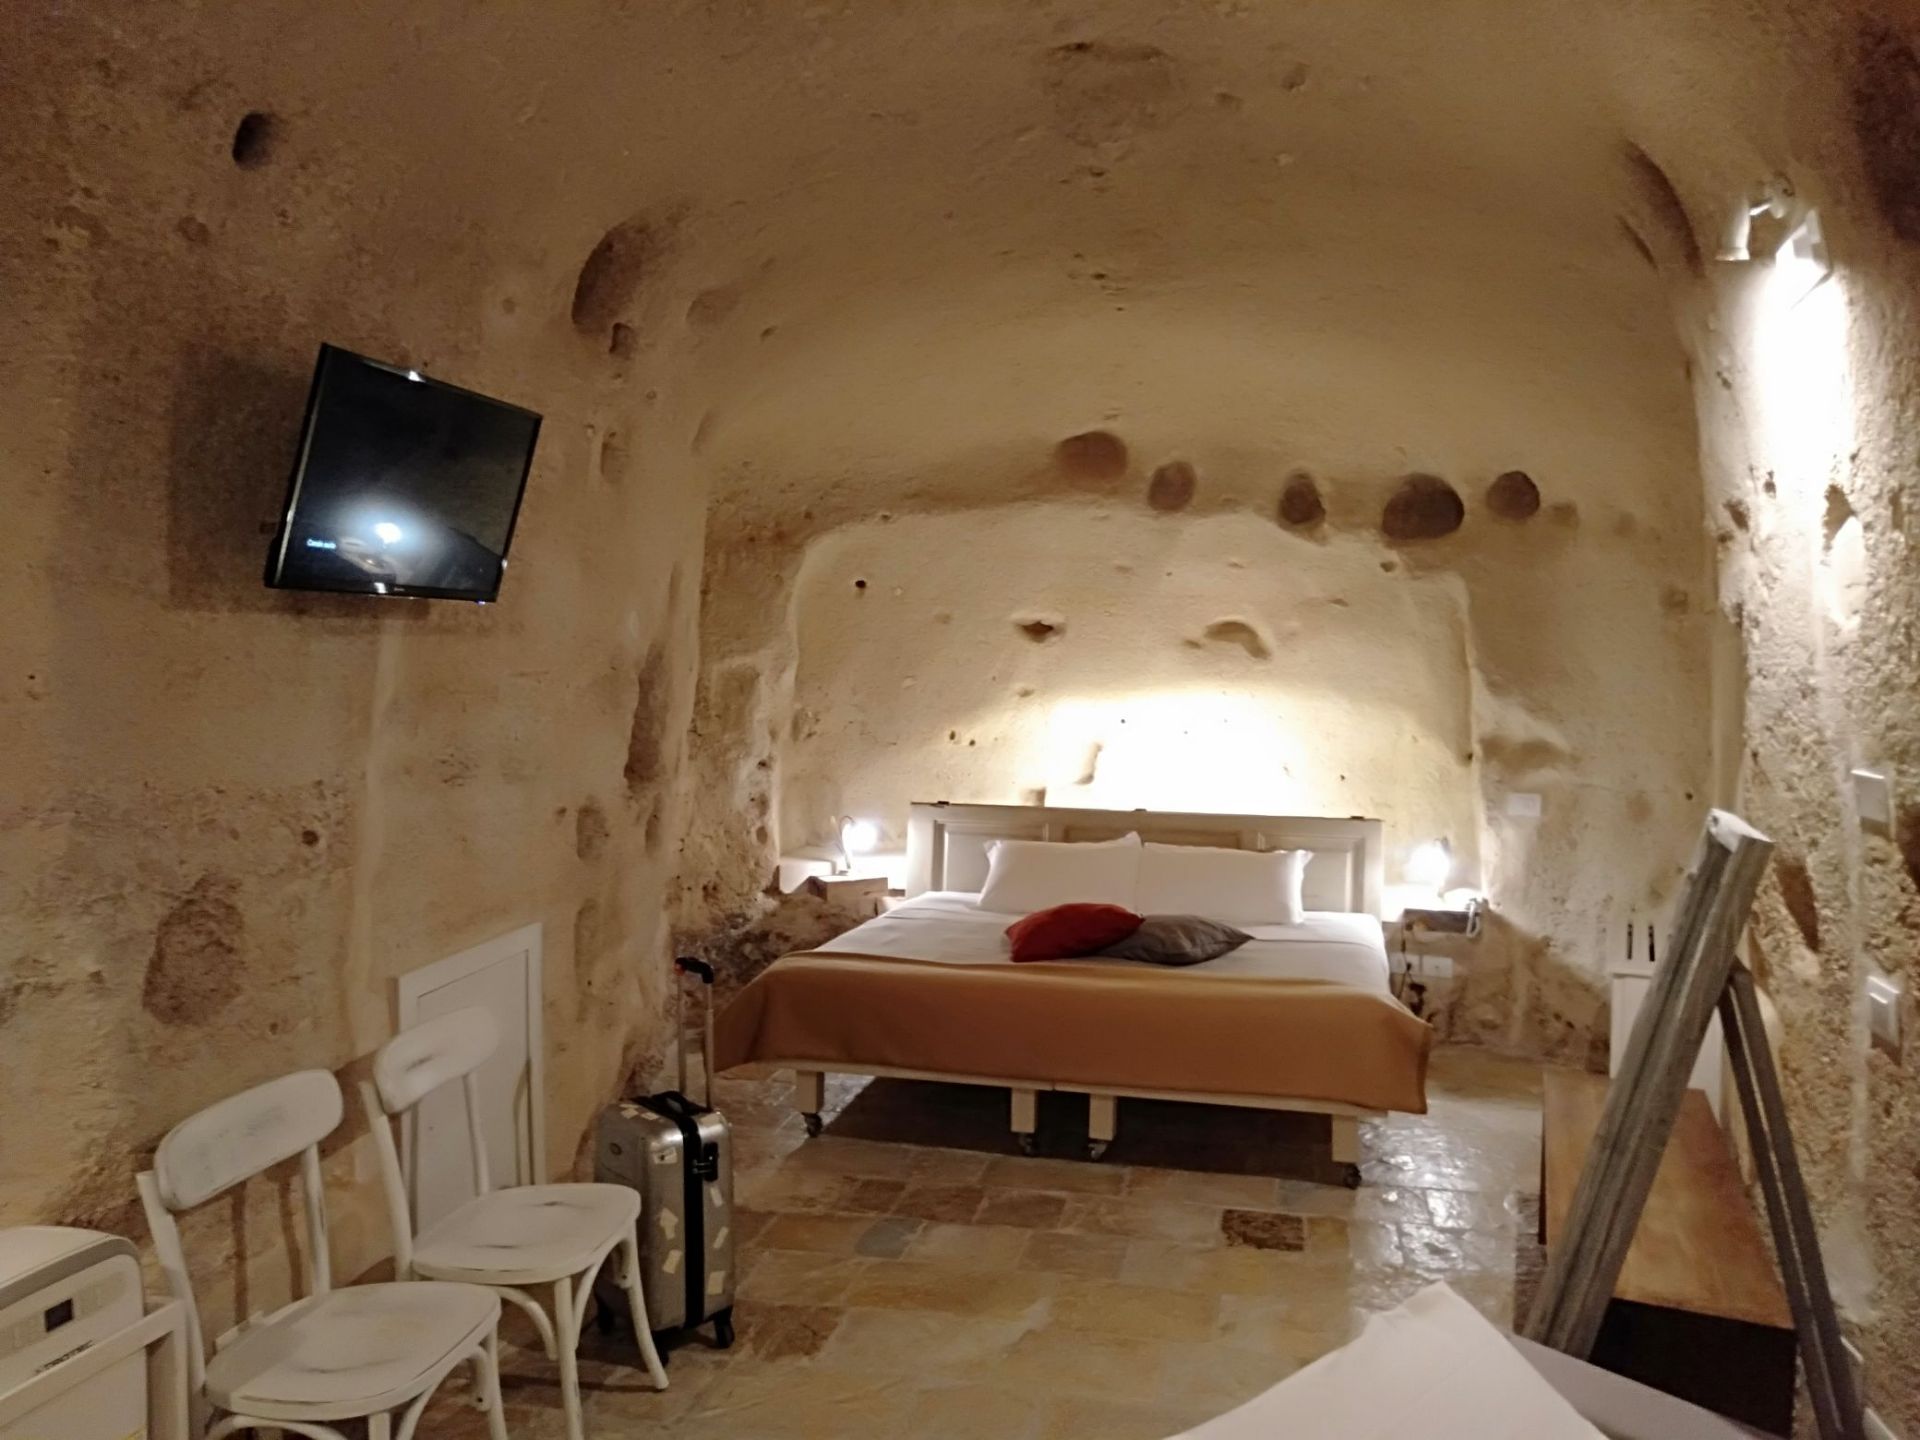 来马泰拉石头城游玩，一定要体验一下这里的洞穴酒店，住在石头洞穴中，冬暖夏凉，感受古人的生活，这里的石